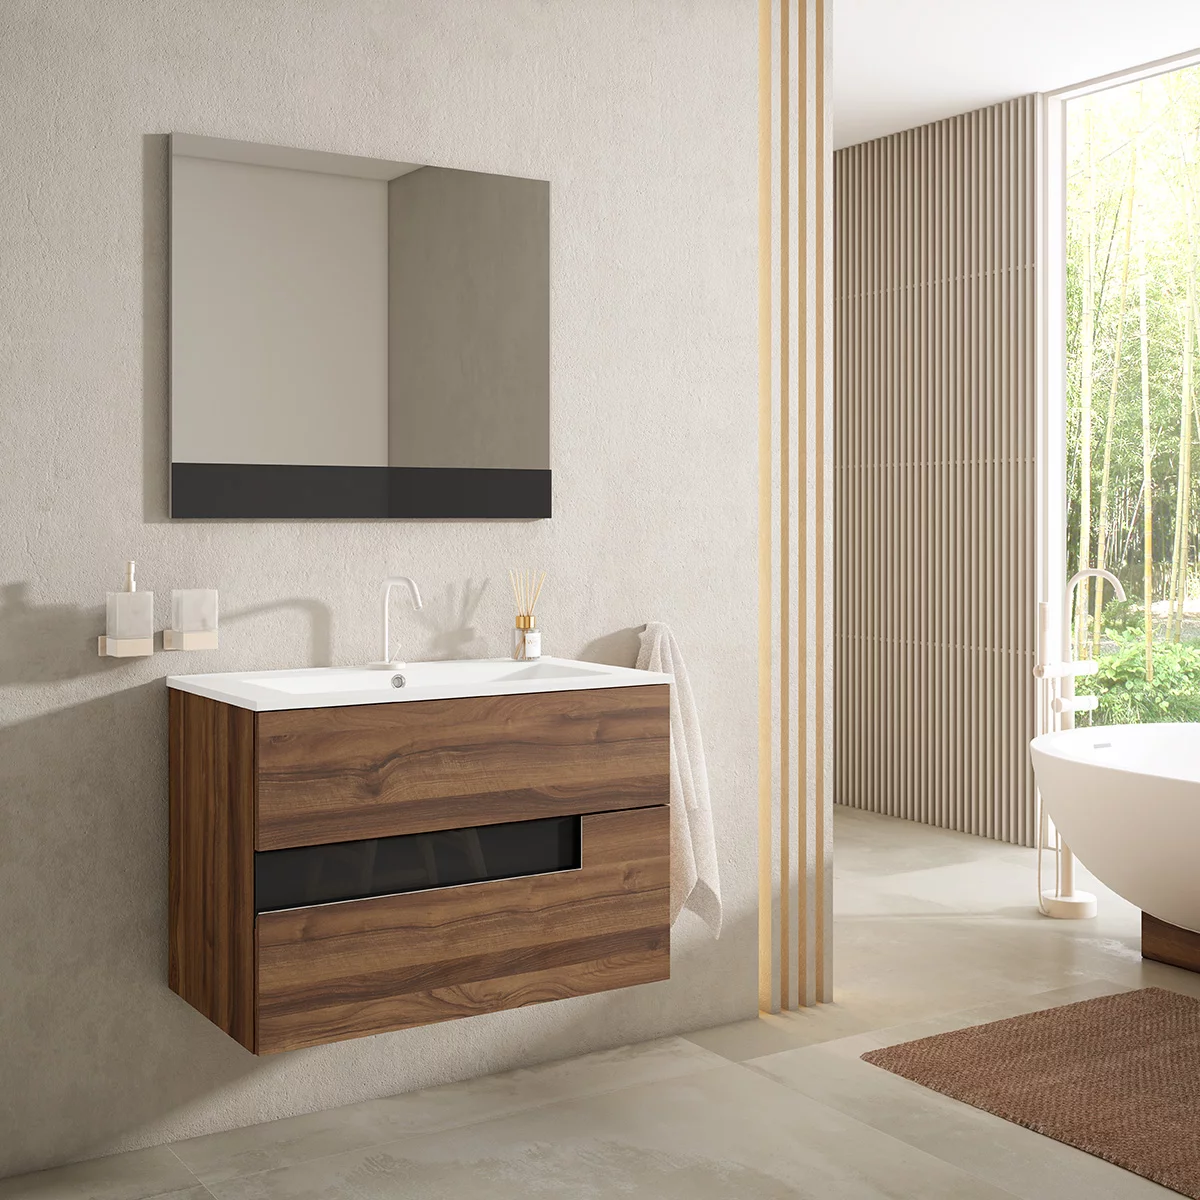 Mueble de lavabo Celia (45 x 80 x 85 cm, Blanco)